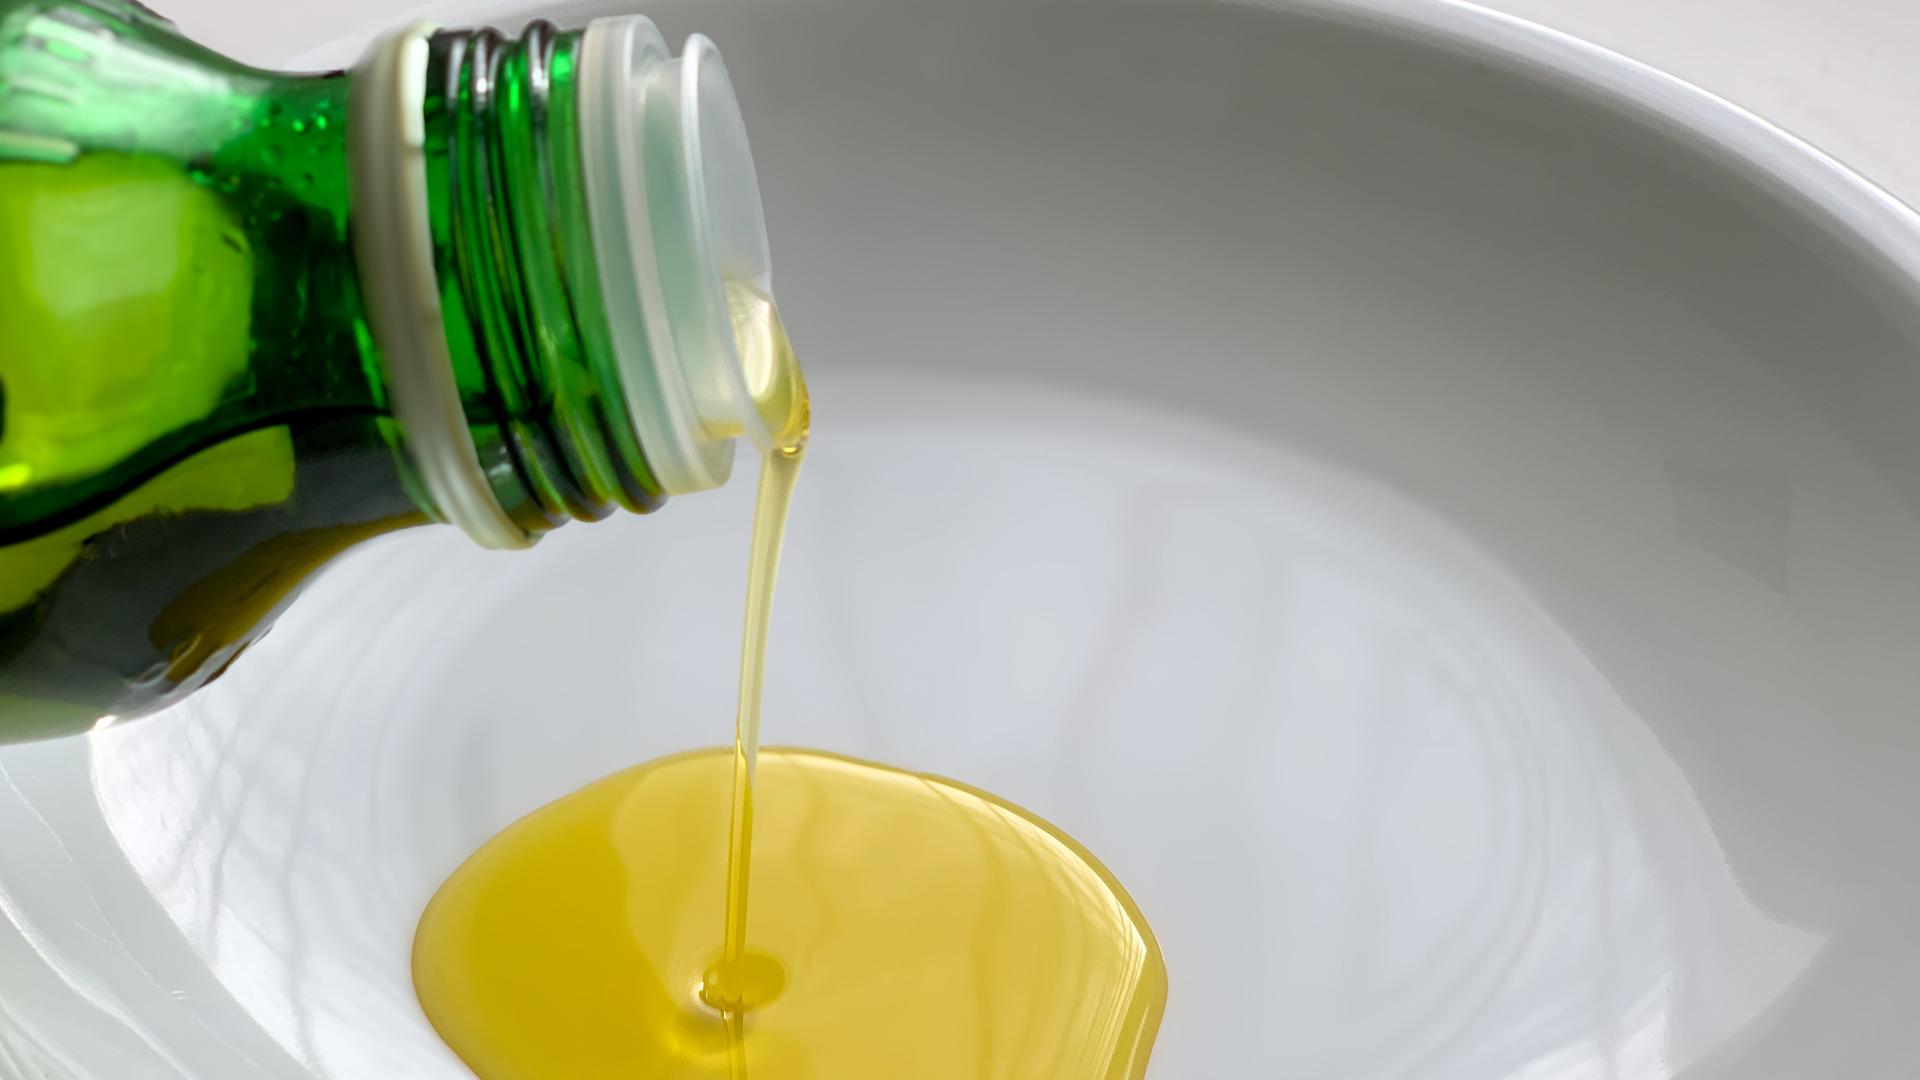 Olivenöl wird aus einer Flasche in eine Schale gegossen